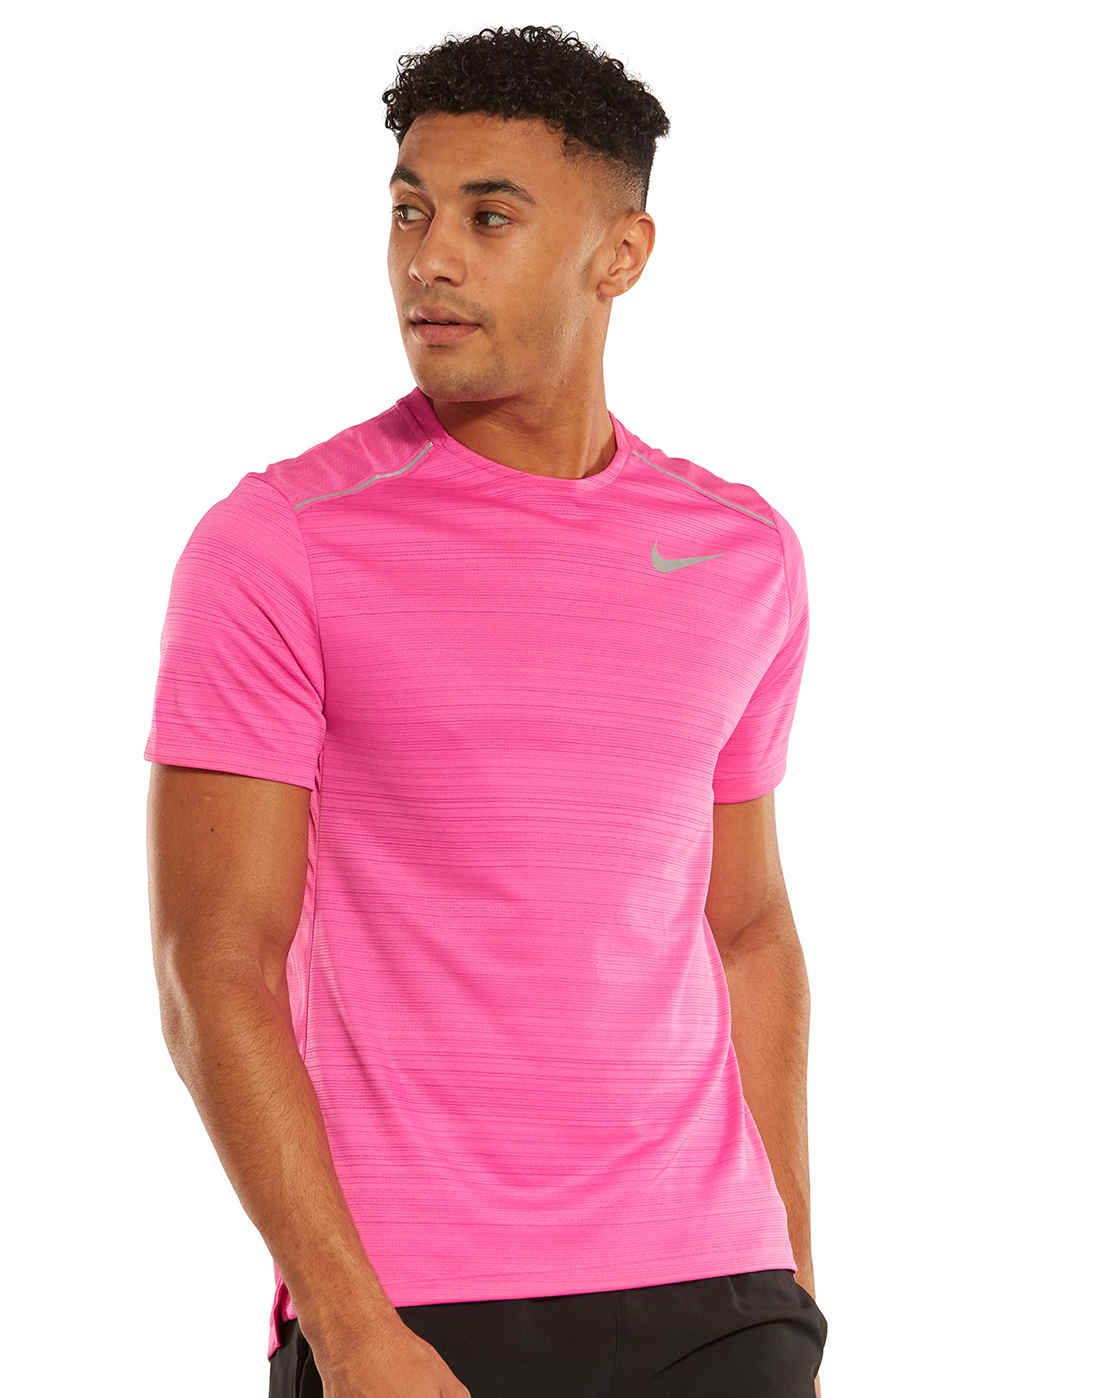 nike neon pink shirt